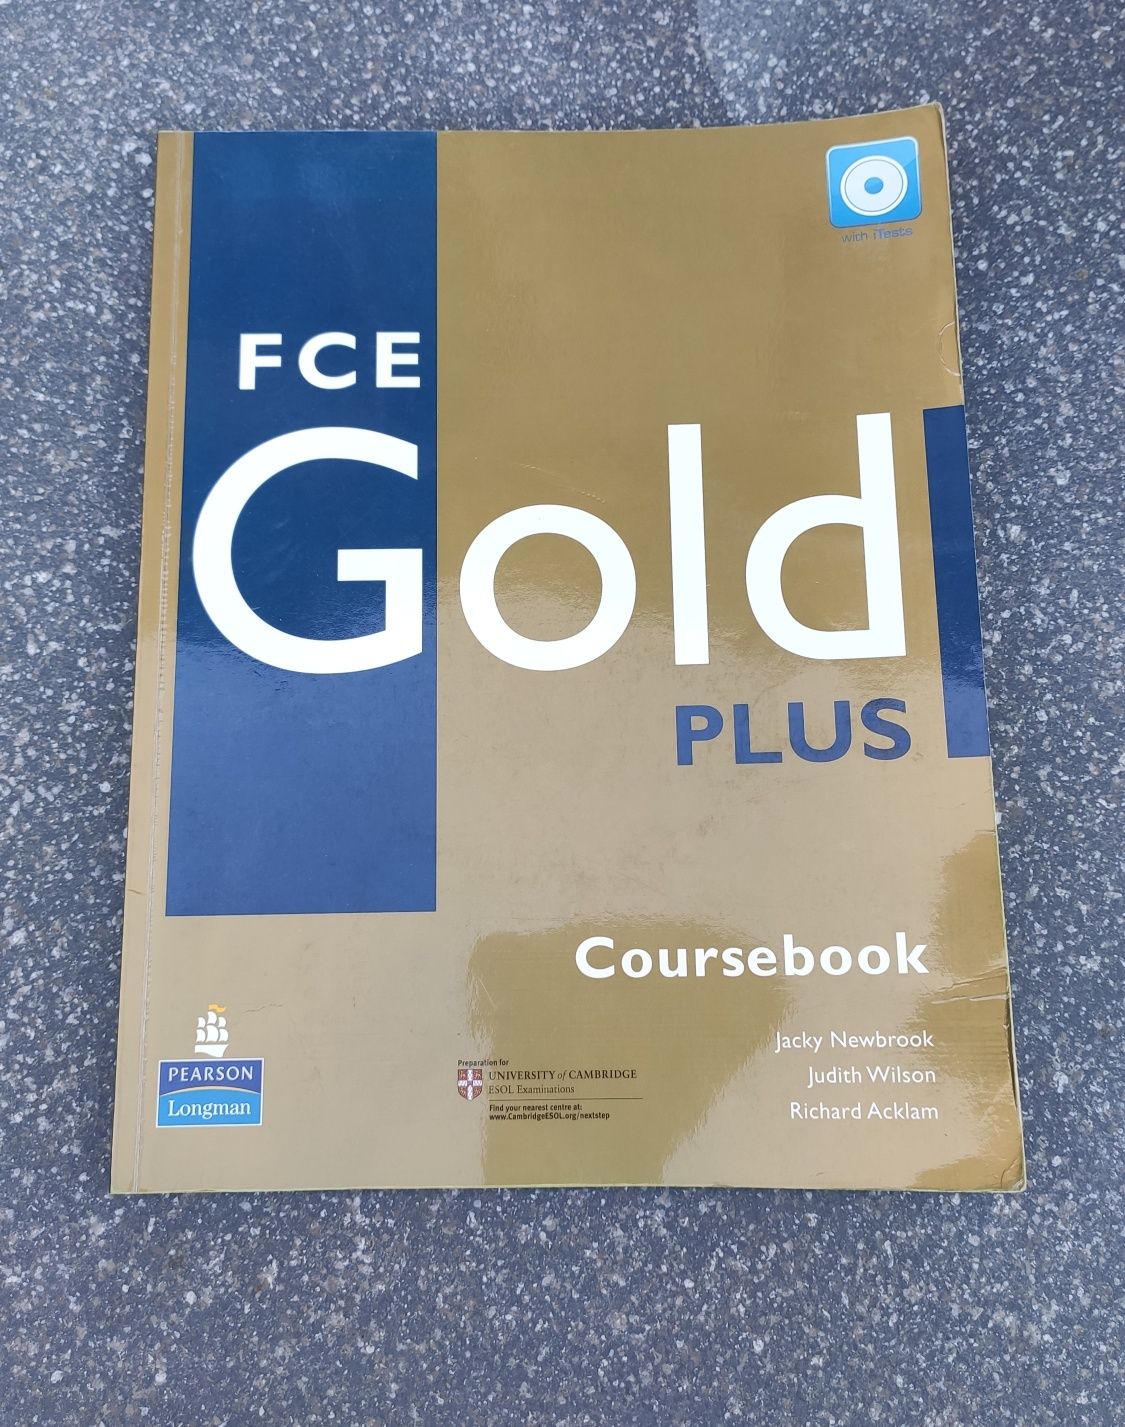 FCE Gold Plus Coursebook Pearson Longman